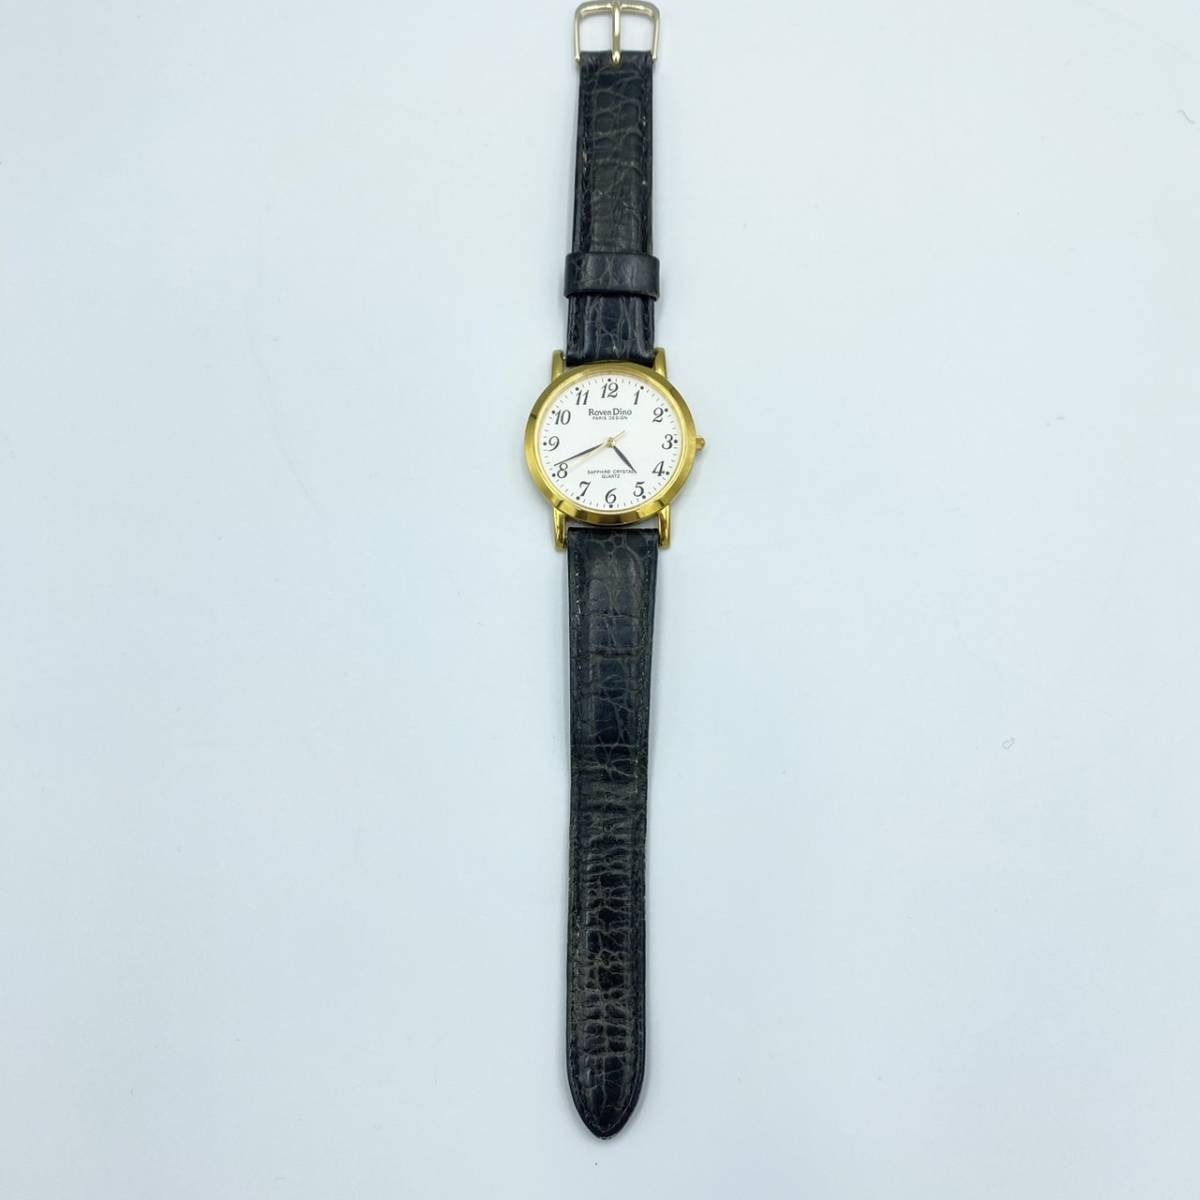 Roven Dino ロマンディーノ レディース 腕時計 RD-3201 クオーツ腕時計 